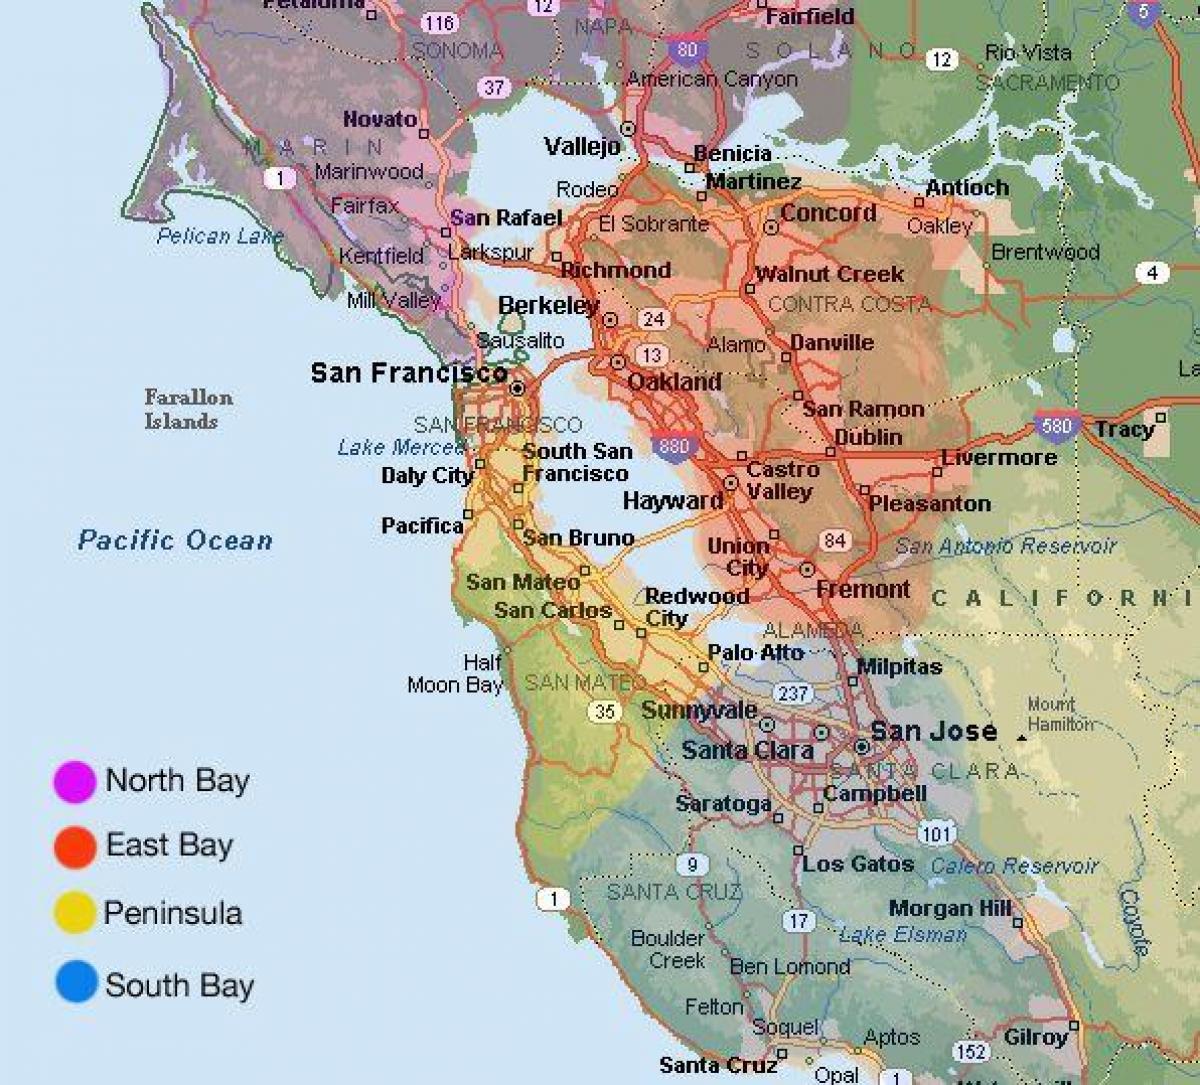 San Francisco arată hartă și zona înconjurătoare